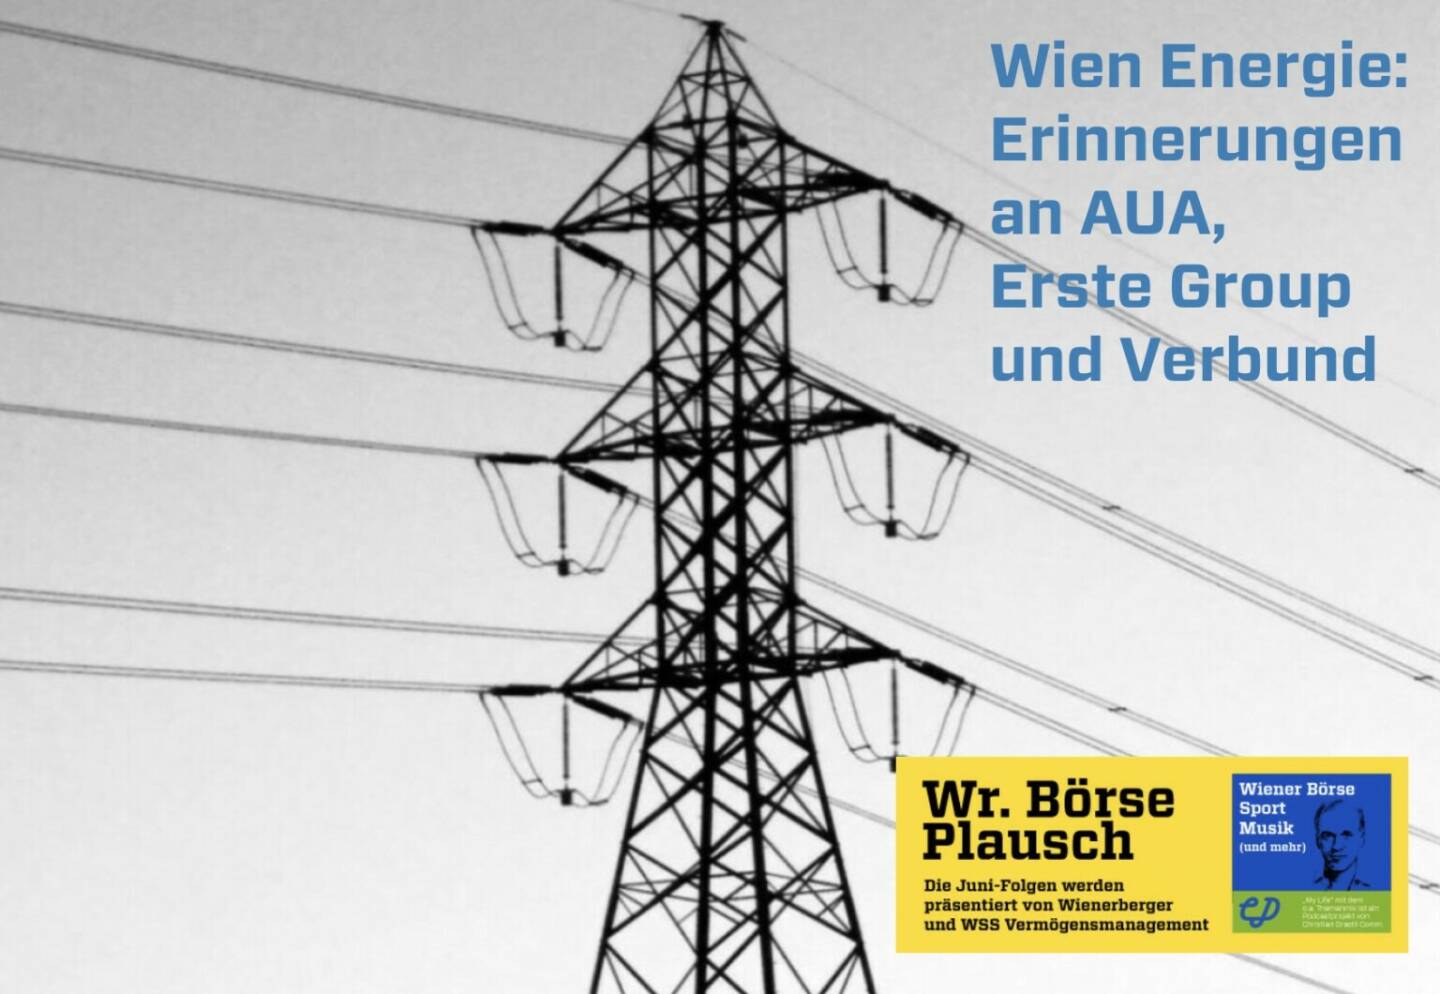 Wien Energie: Erinnerungen an AUA, Erste Group und Verbund. Dies in Folge S2/103 der Wiener Börse Pläusche im Rahmen von http://www.christian-drastil.com/podcast .